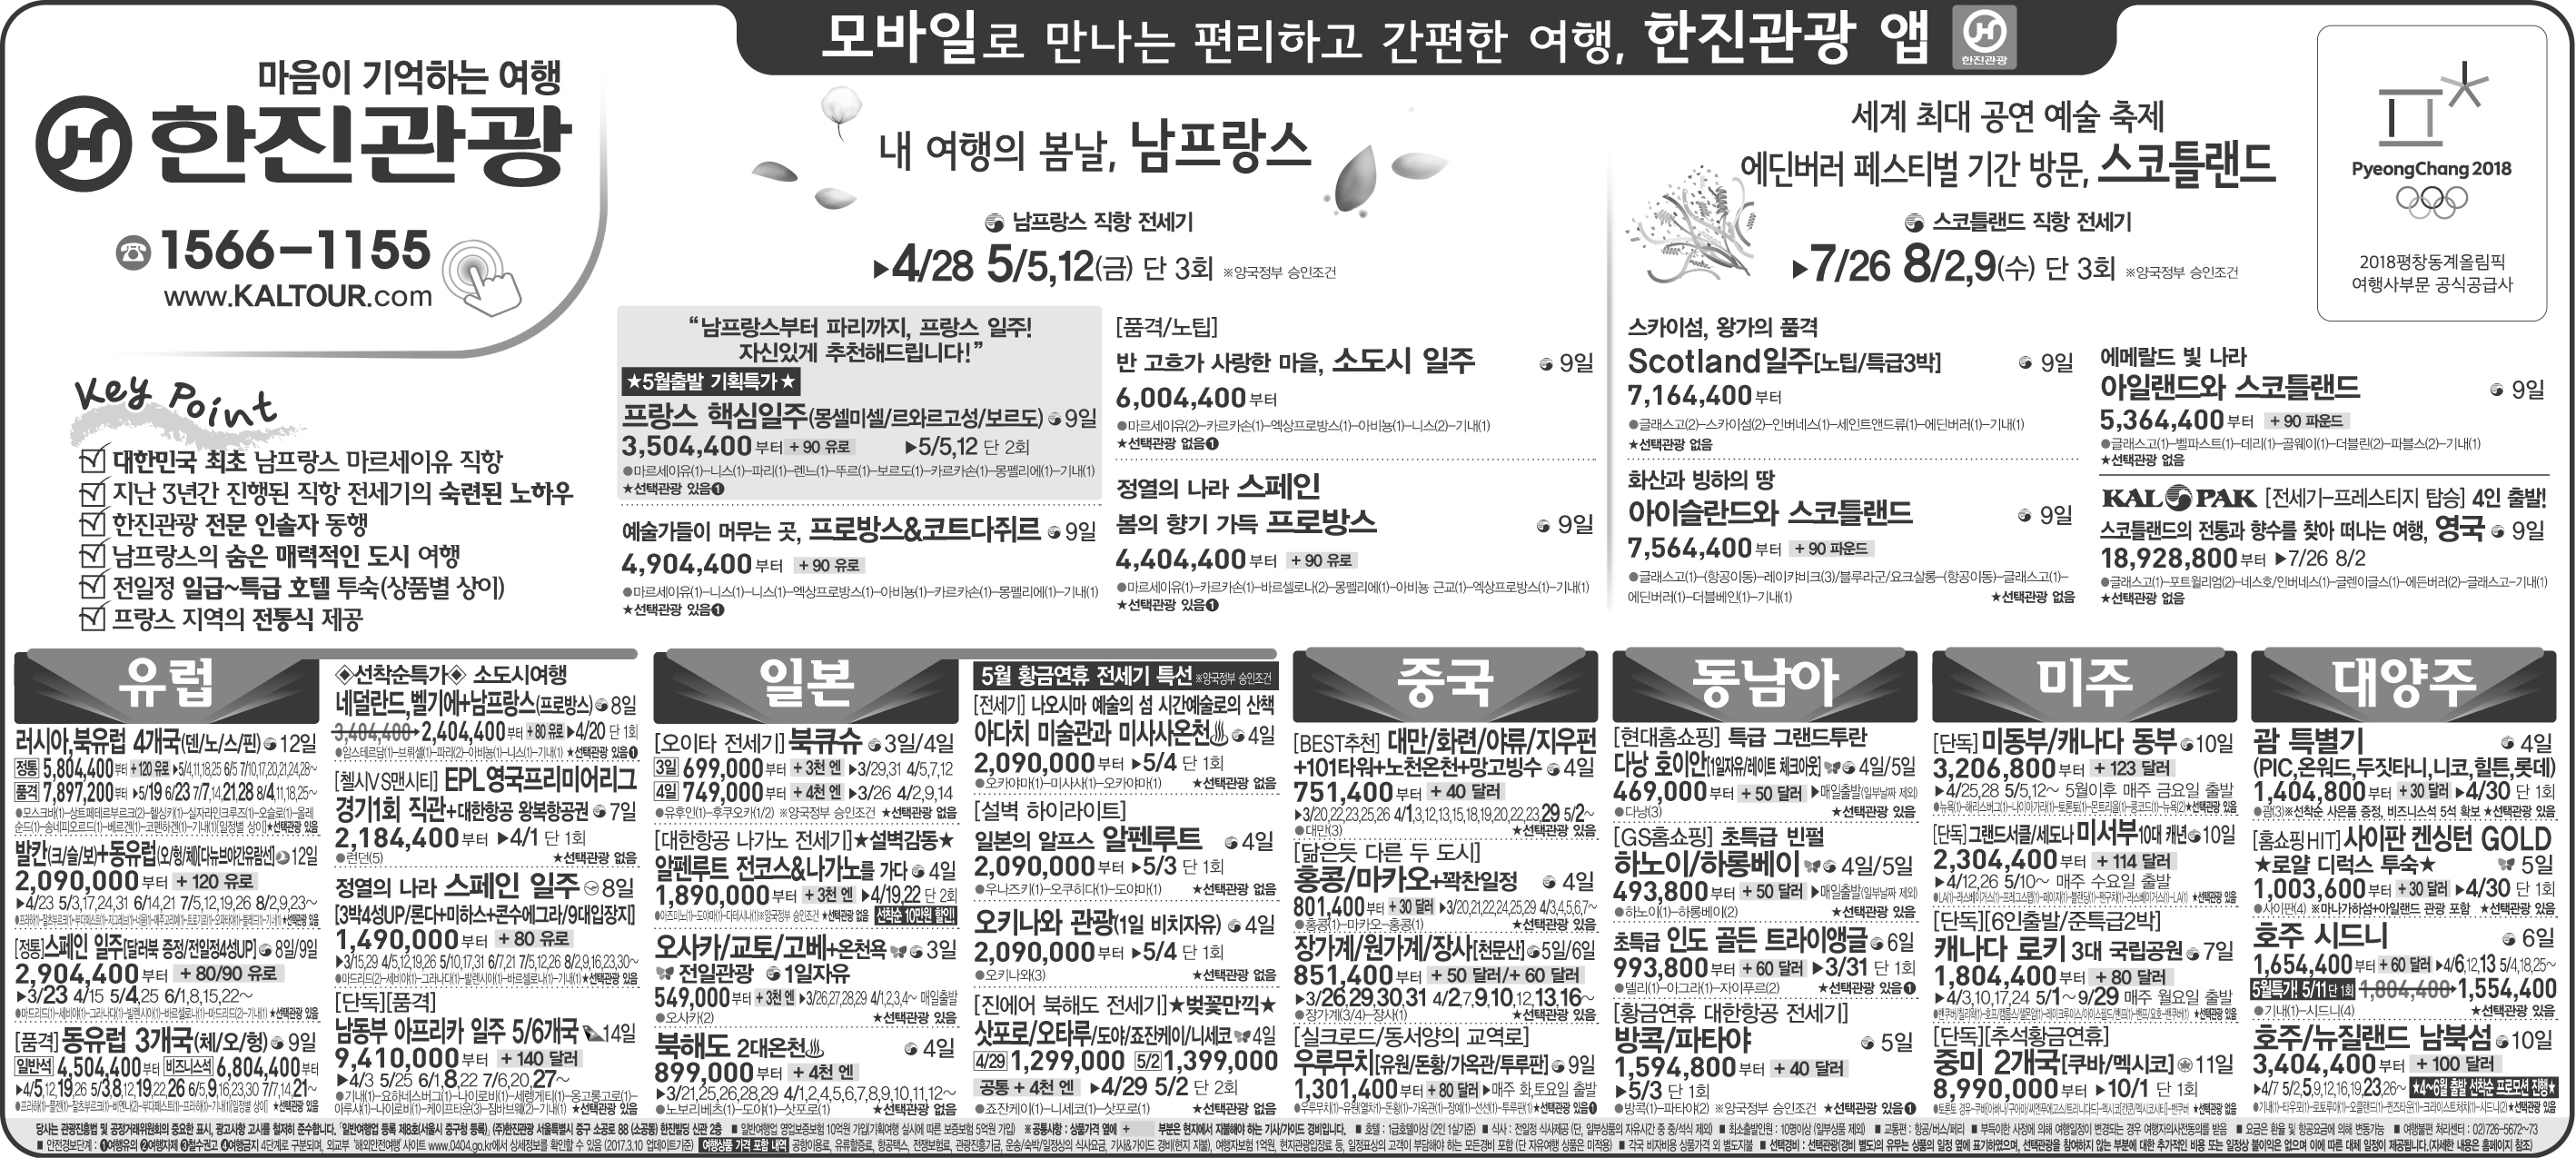 조선일보 [2017.03.13 월요일]